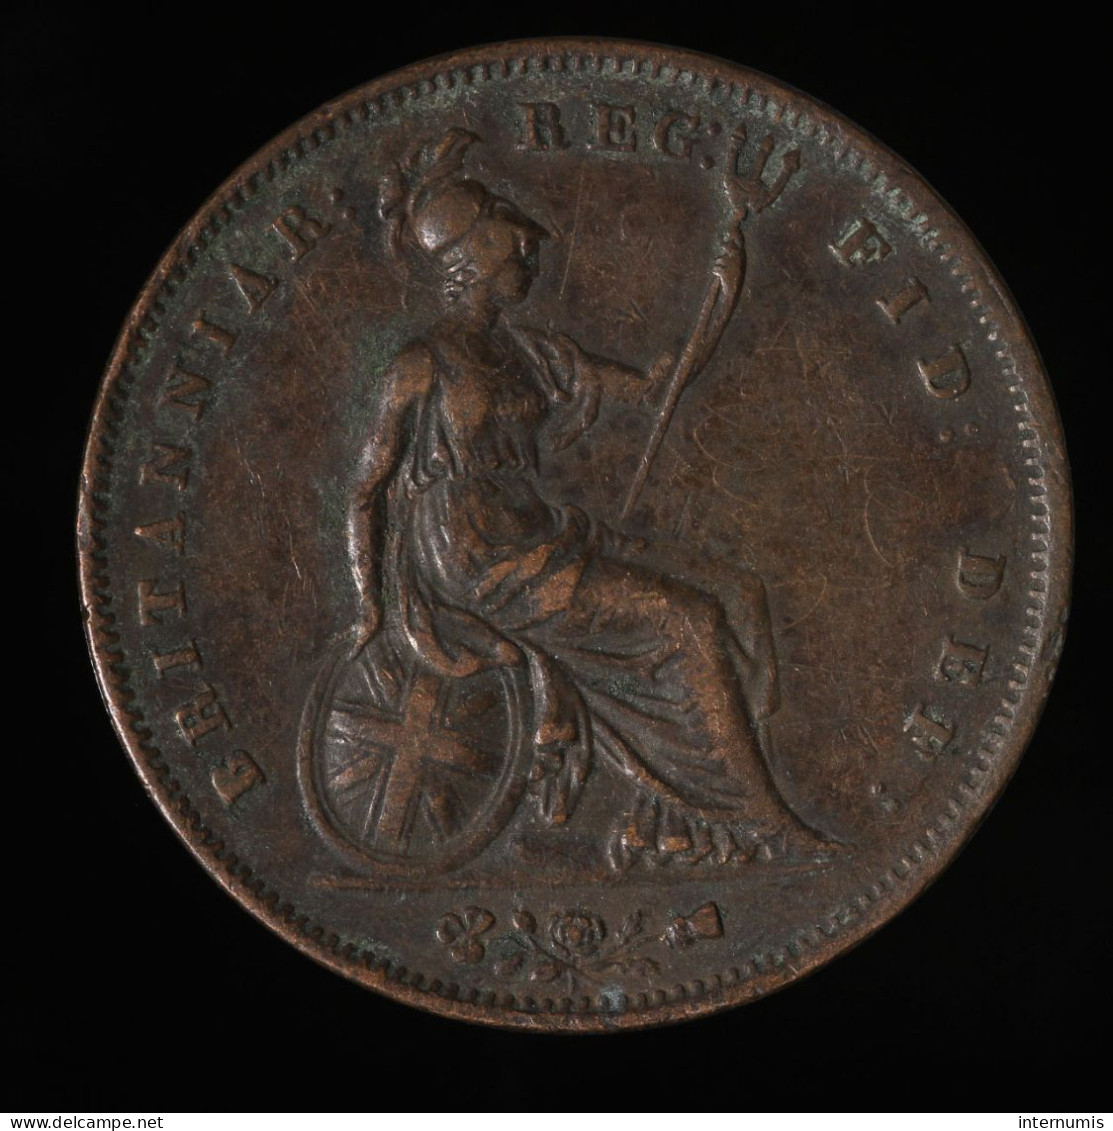  Grande-Bretagne / United Kingdom, Victoria, 1 Penny, 1854, , Cuivre (Copper), TTB (EF),
KM#739, S.3948 - D. 1 Penny